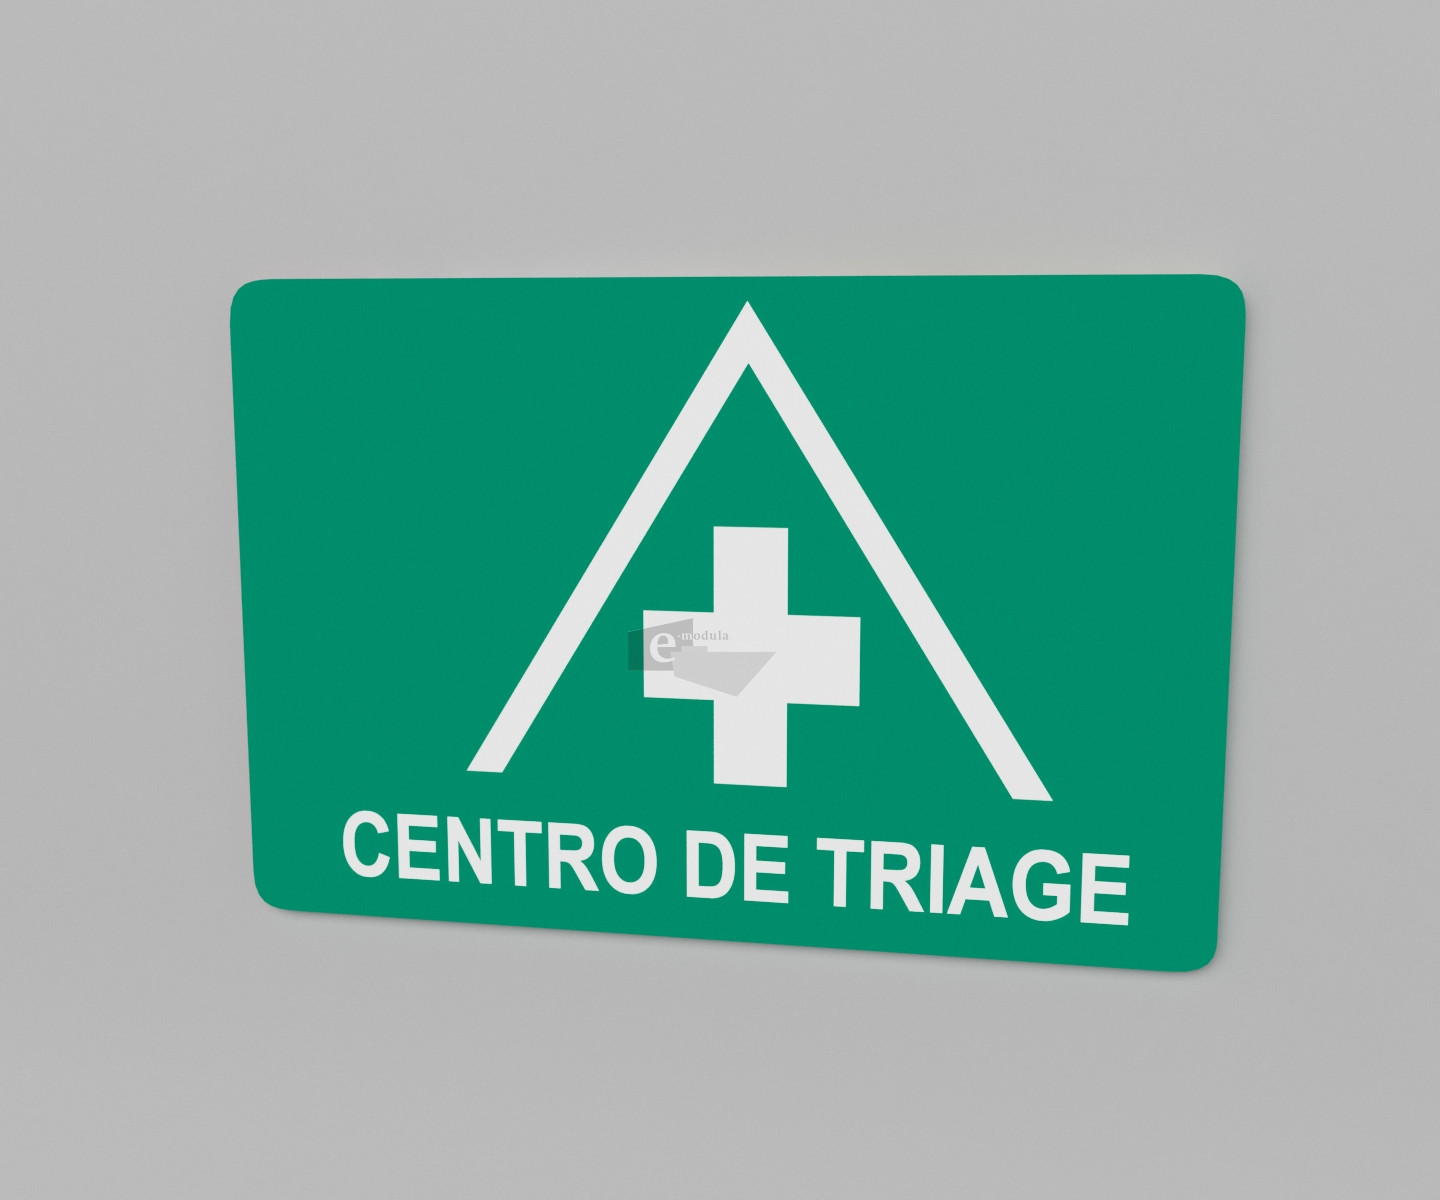 20x30cm / centro de triage / Señal / letrero / verde